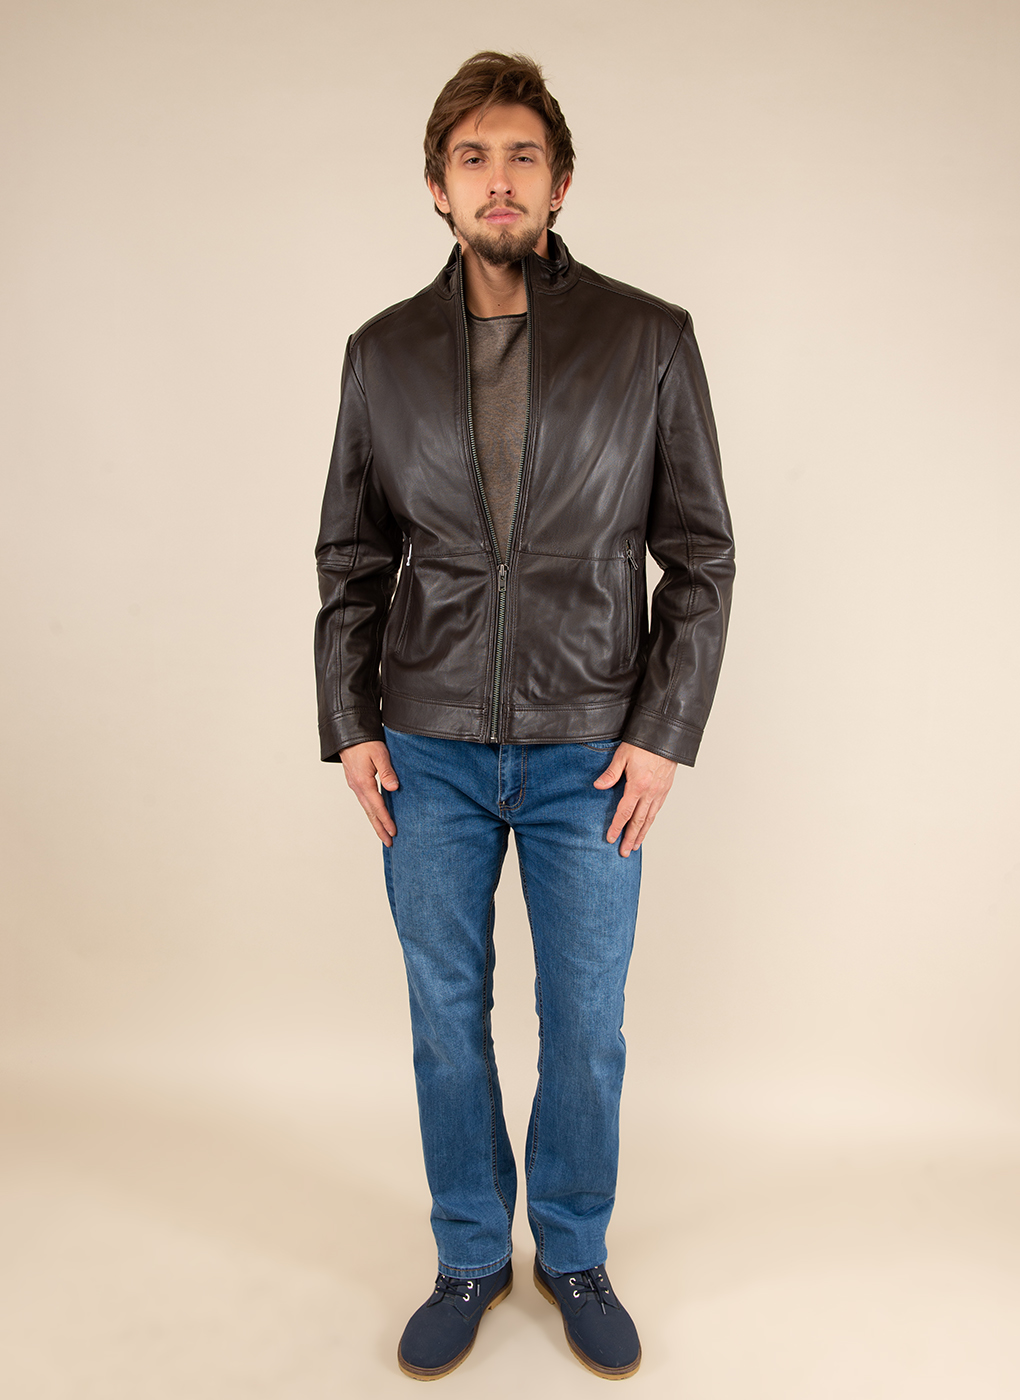 Кожаная куртка мужская Каляев 51795 коричневая 62 RU